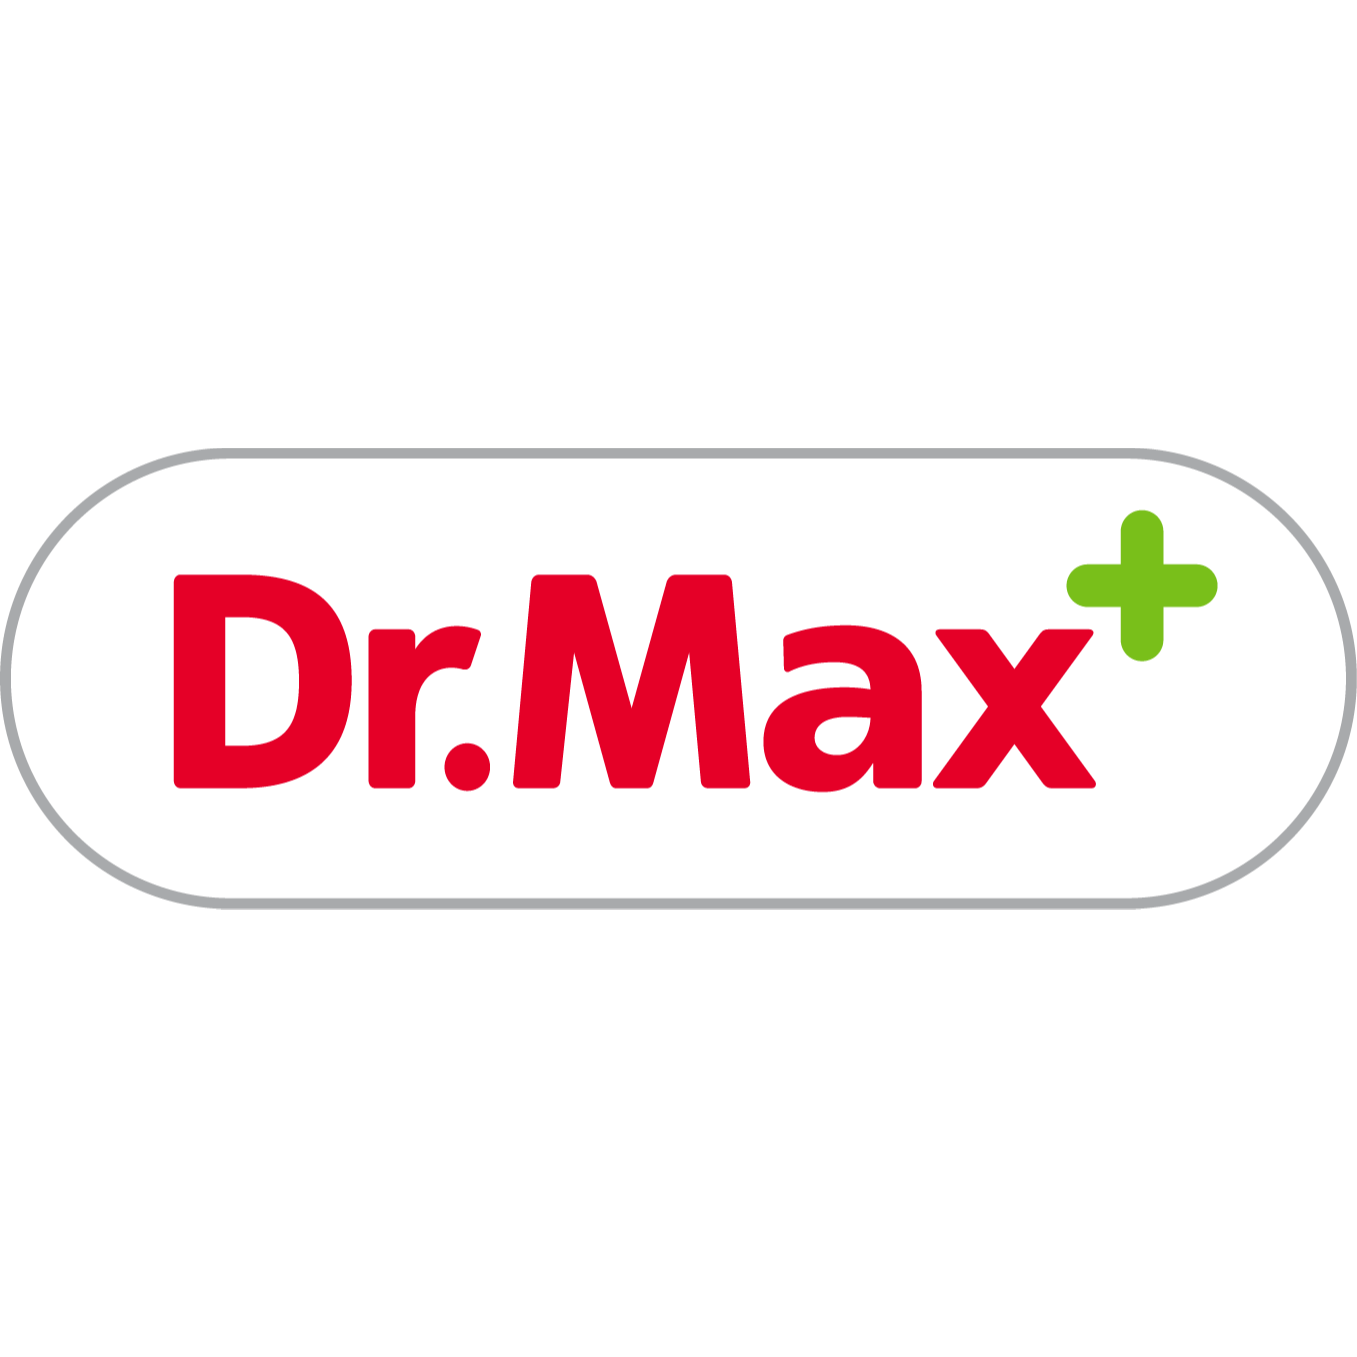 Farmacia Dr.Max - Farmacie San Martino Buon Albergo